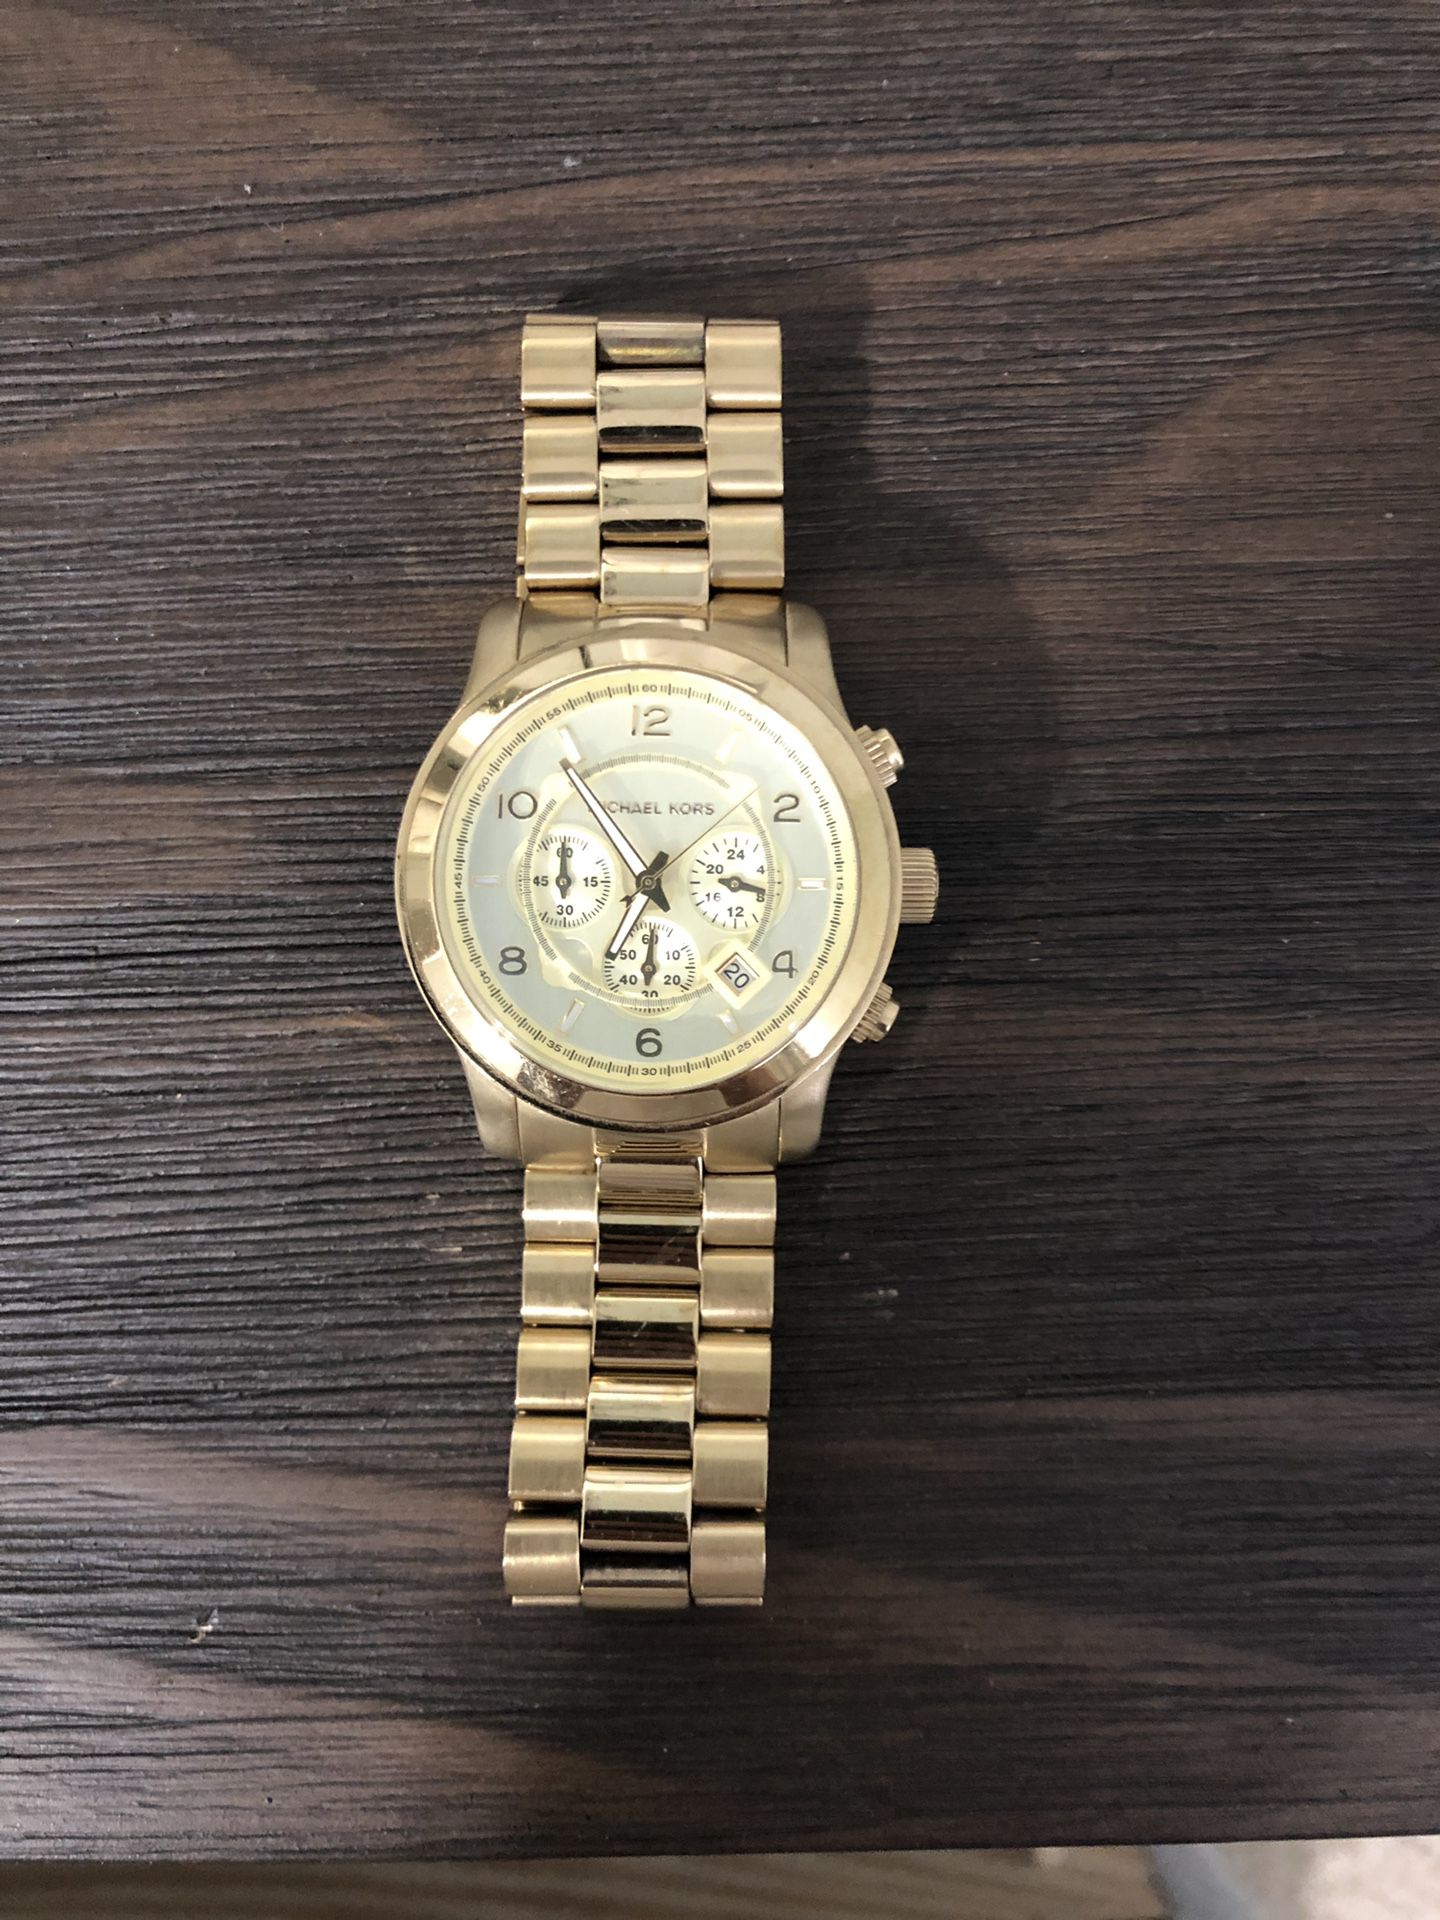 Michael Kors original gold watch